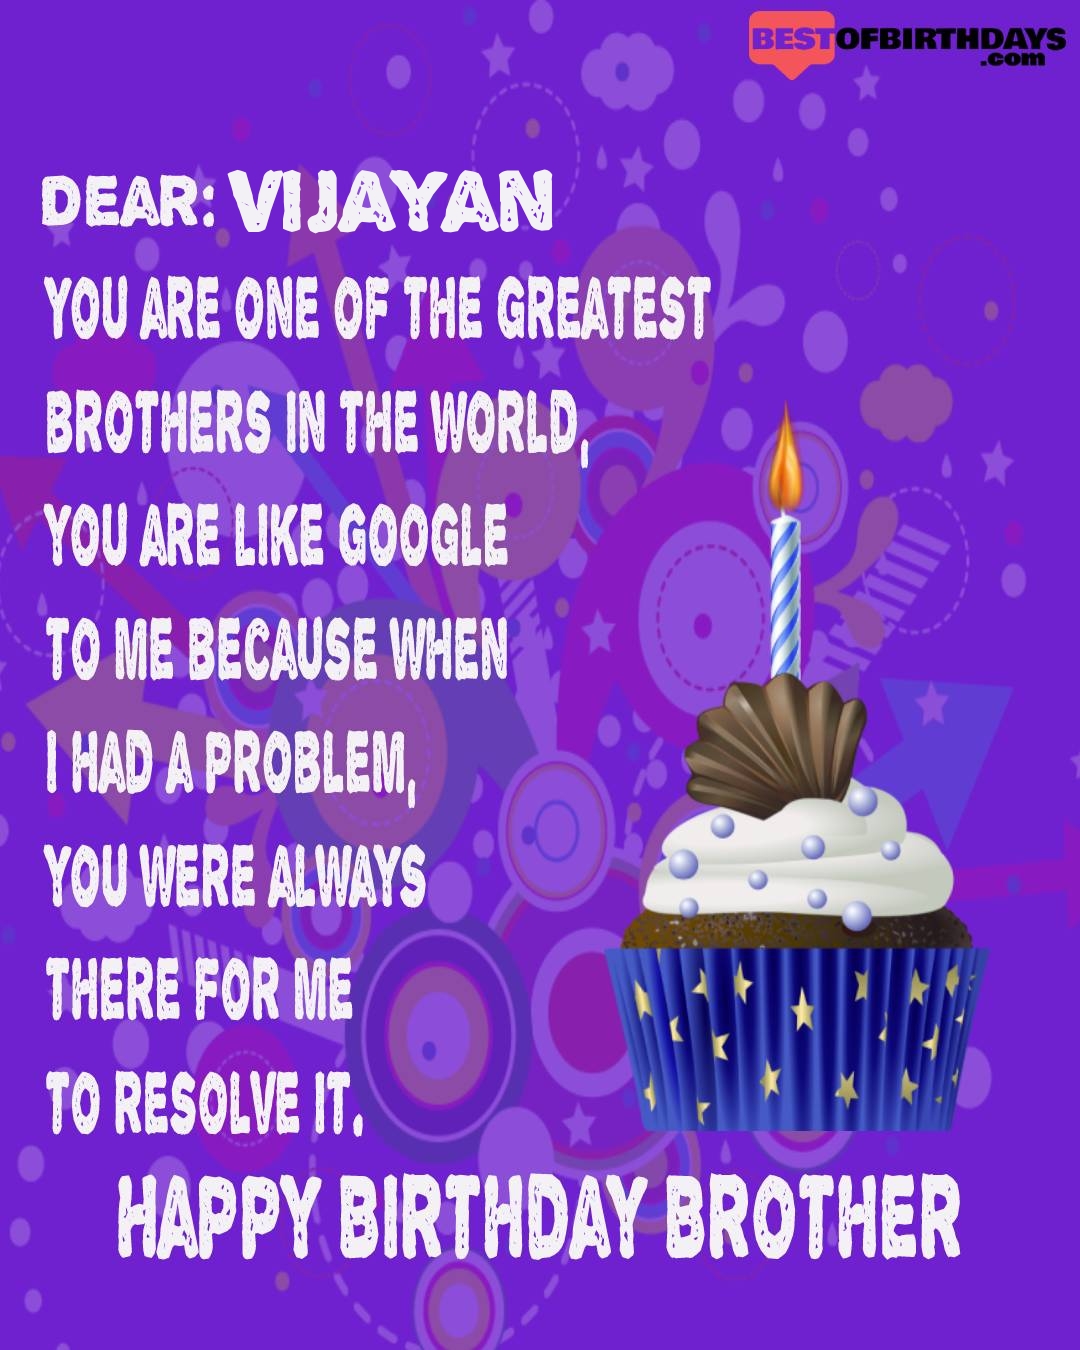 Happy birthday vijayan bhai brother bro